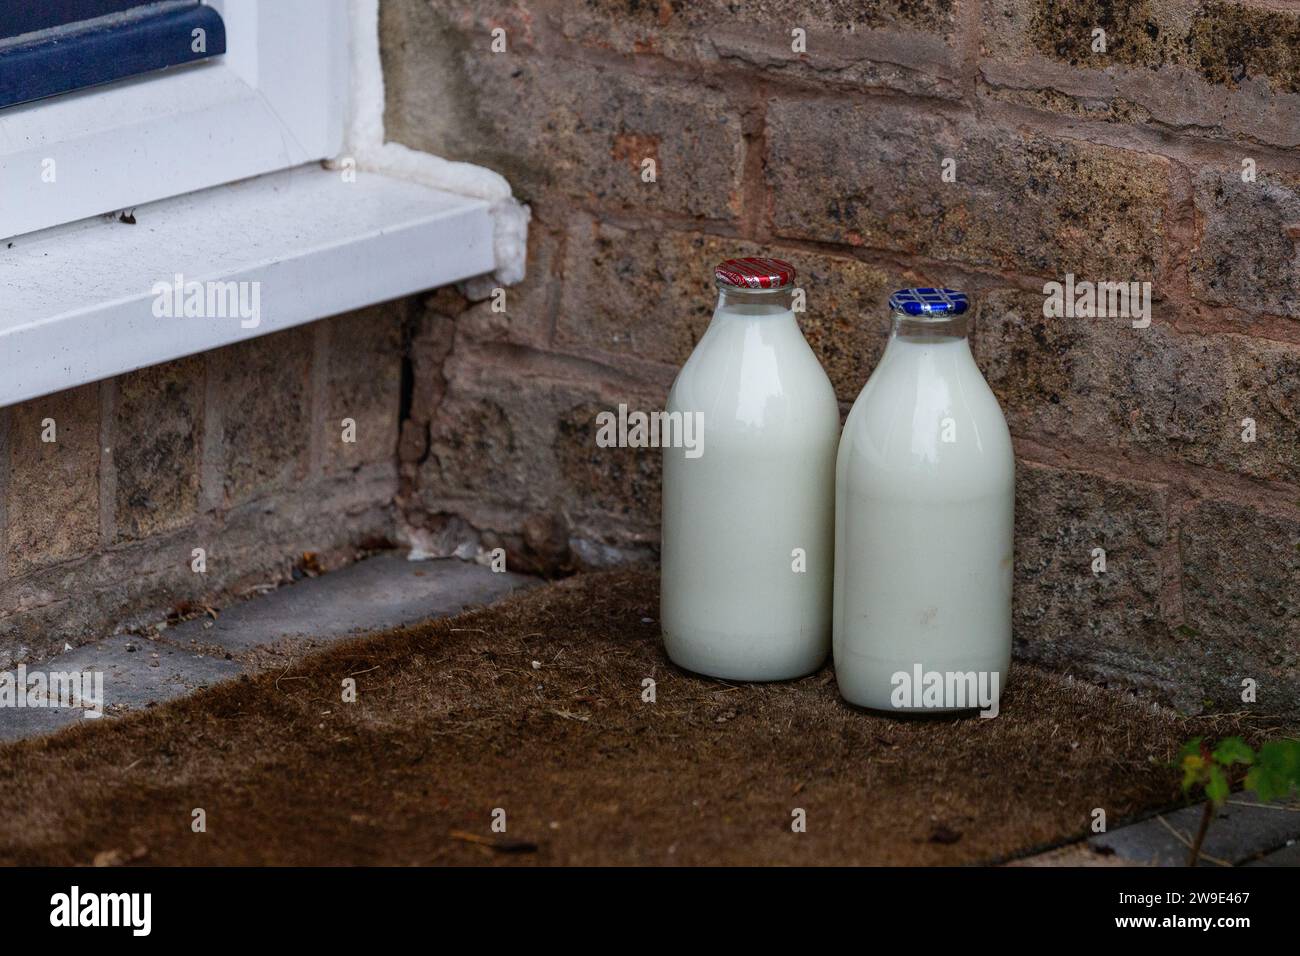 Consegna del latte a domicilio nel Regno Unito. Una pinta di latte scremato e una pinta di latte parzialmente scremato in bottiglie di vetro a due passi lasciate da un lattaio nel Regno Unito. Foto Stock